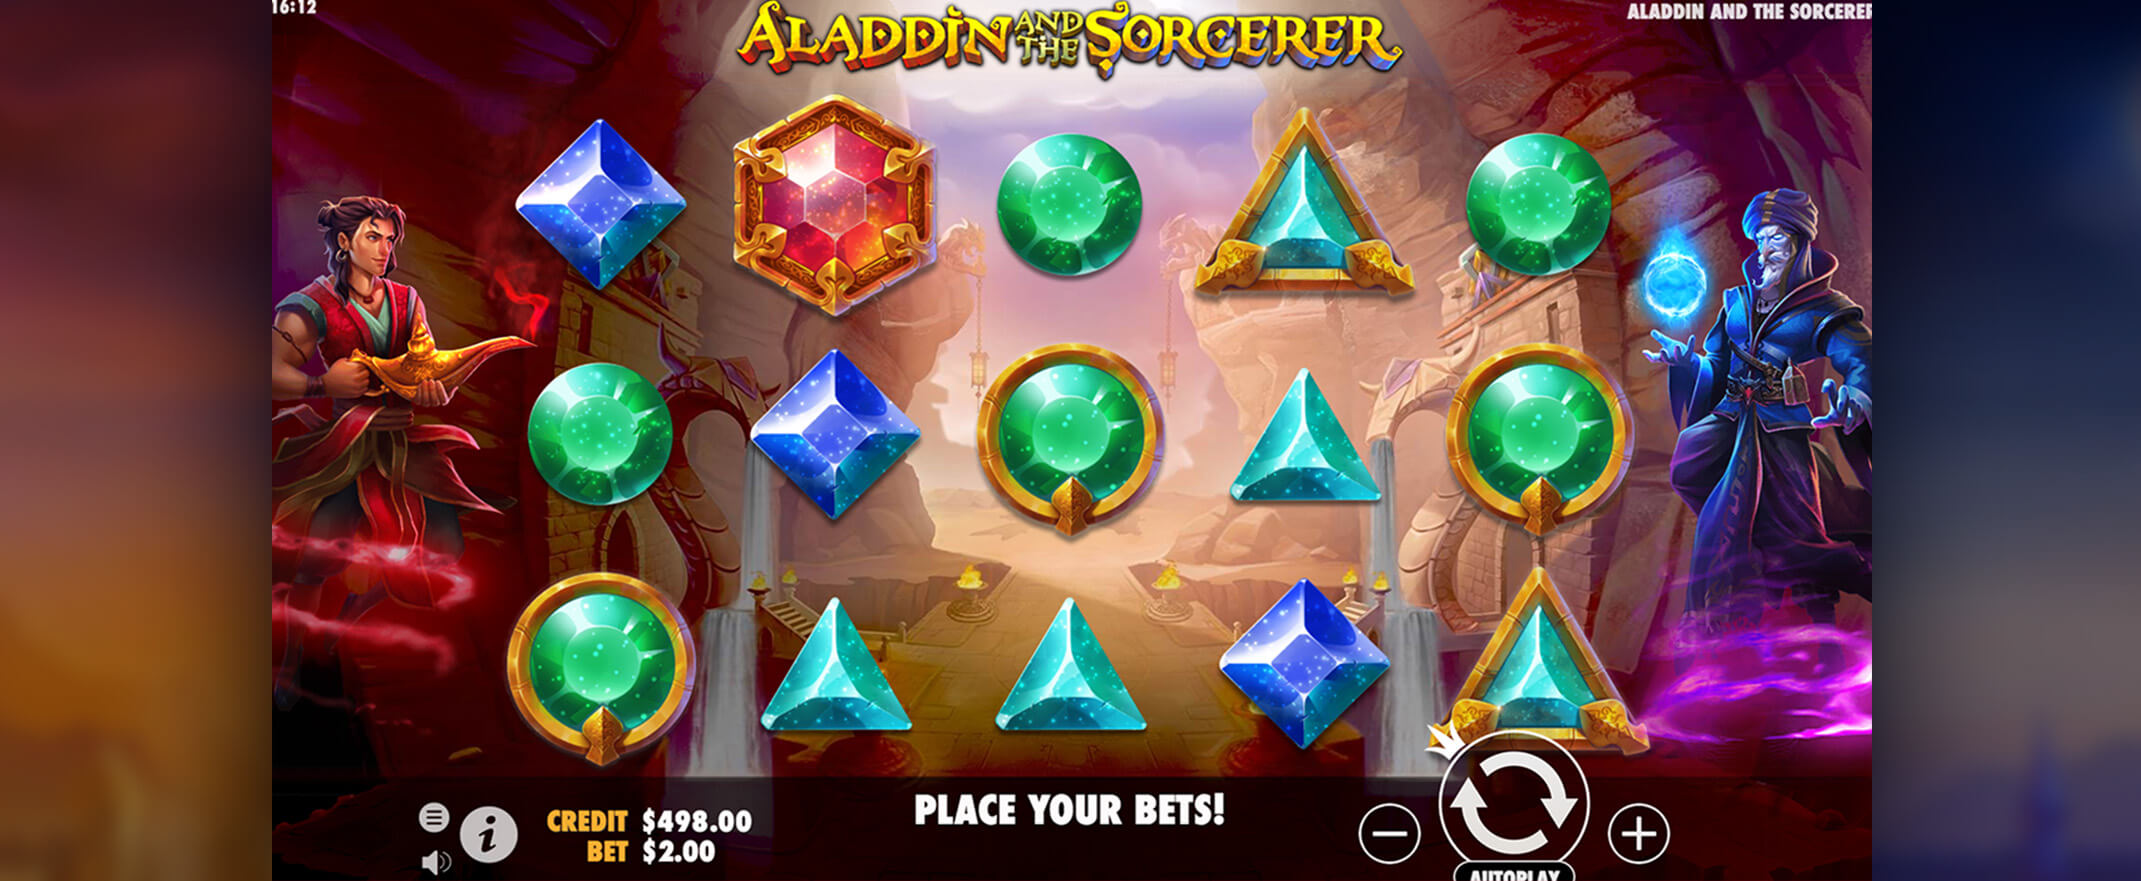 Aladdin and the Sorcerer Spielautomat spielen